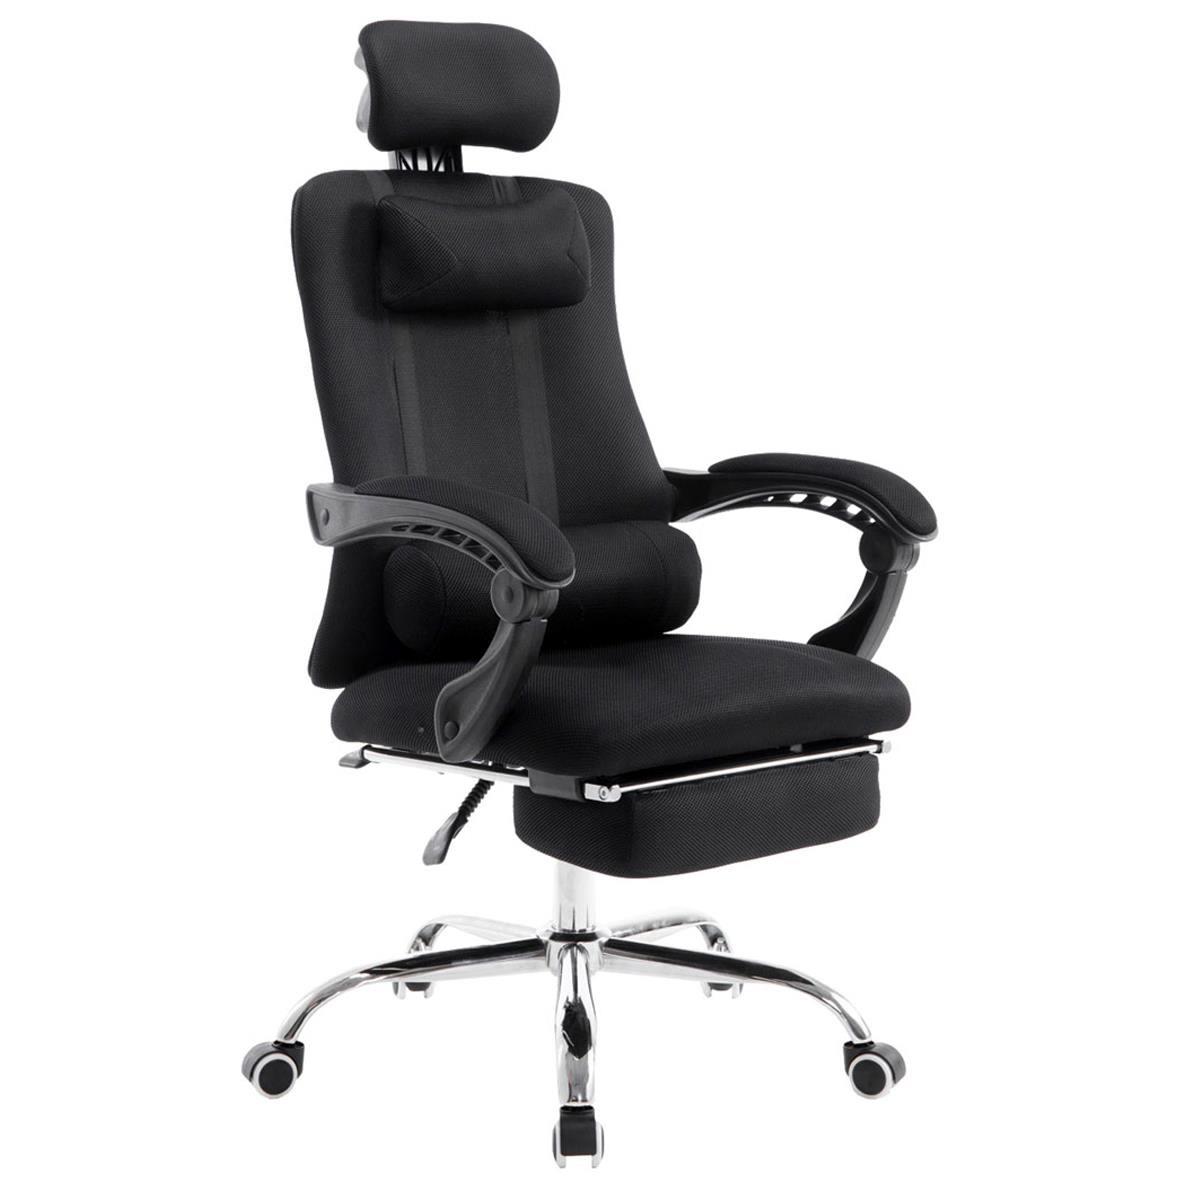 Gaming-Stuhl ANTARES, ausziehbare Fußablage, atmungsaktiver Netzbezug, Farbe Schwarz